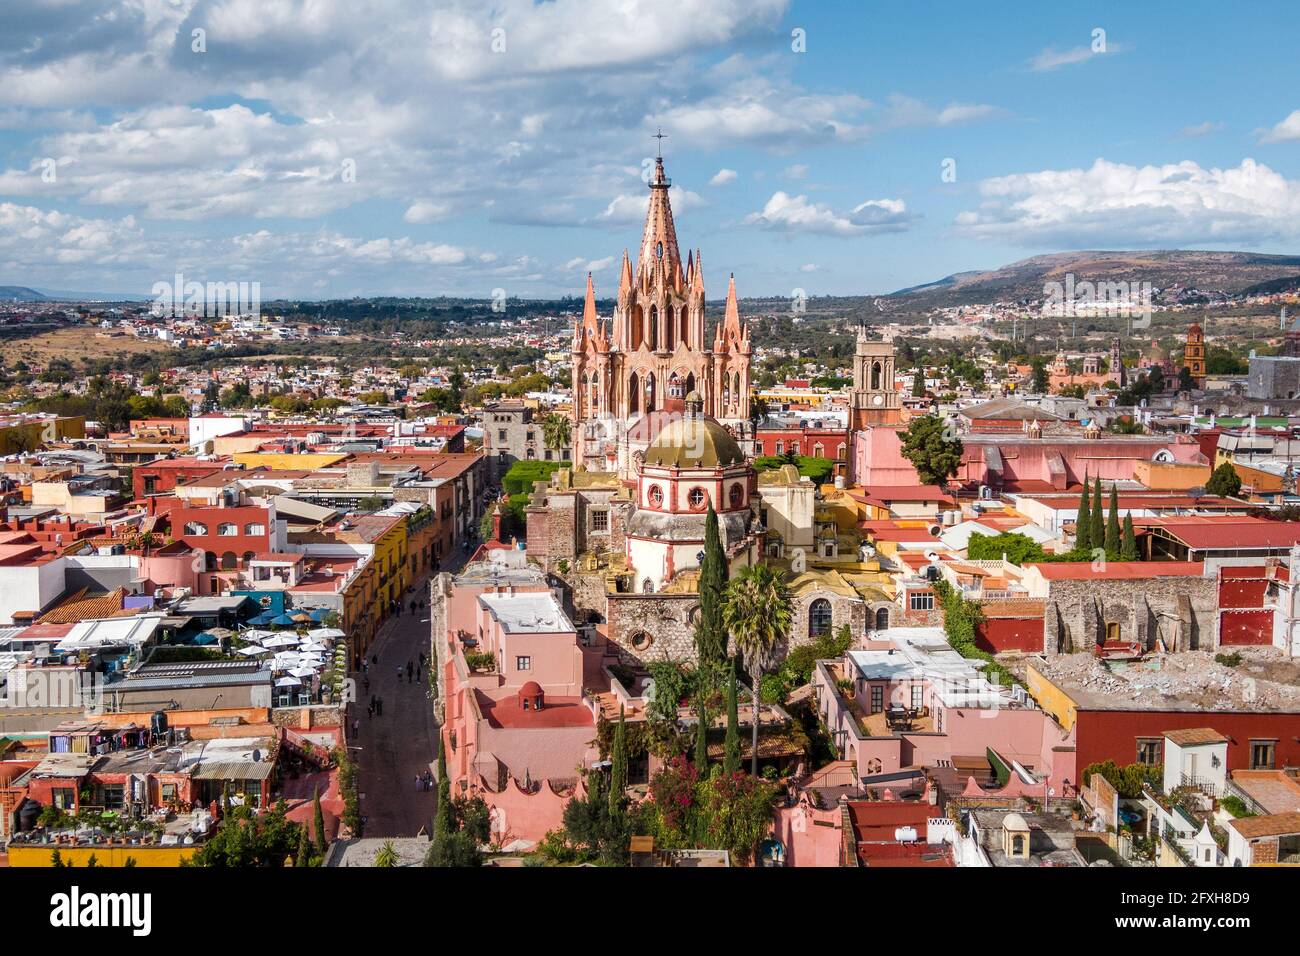 Aerial view of San Miguel de Allende in Guanajuato, Mexico. Stock Photo